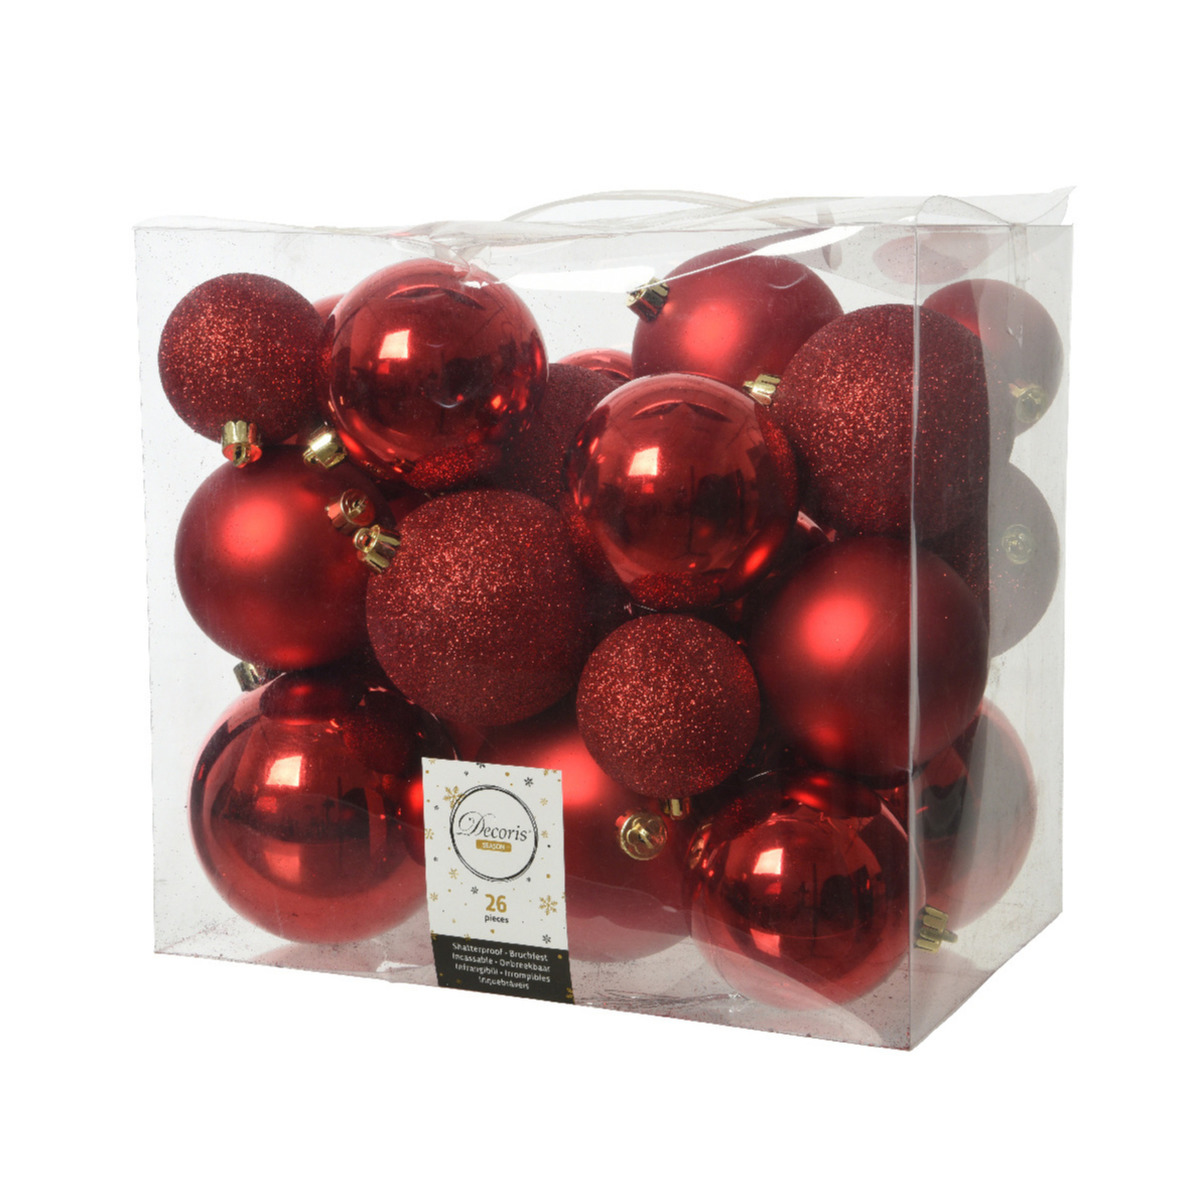 Decoris kerstballen 26x st rood 6, 8 en 10 cm kunststof kerstversiering